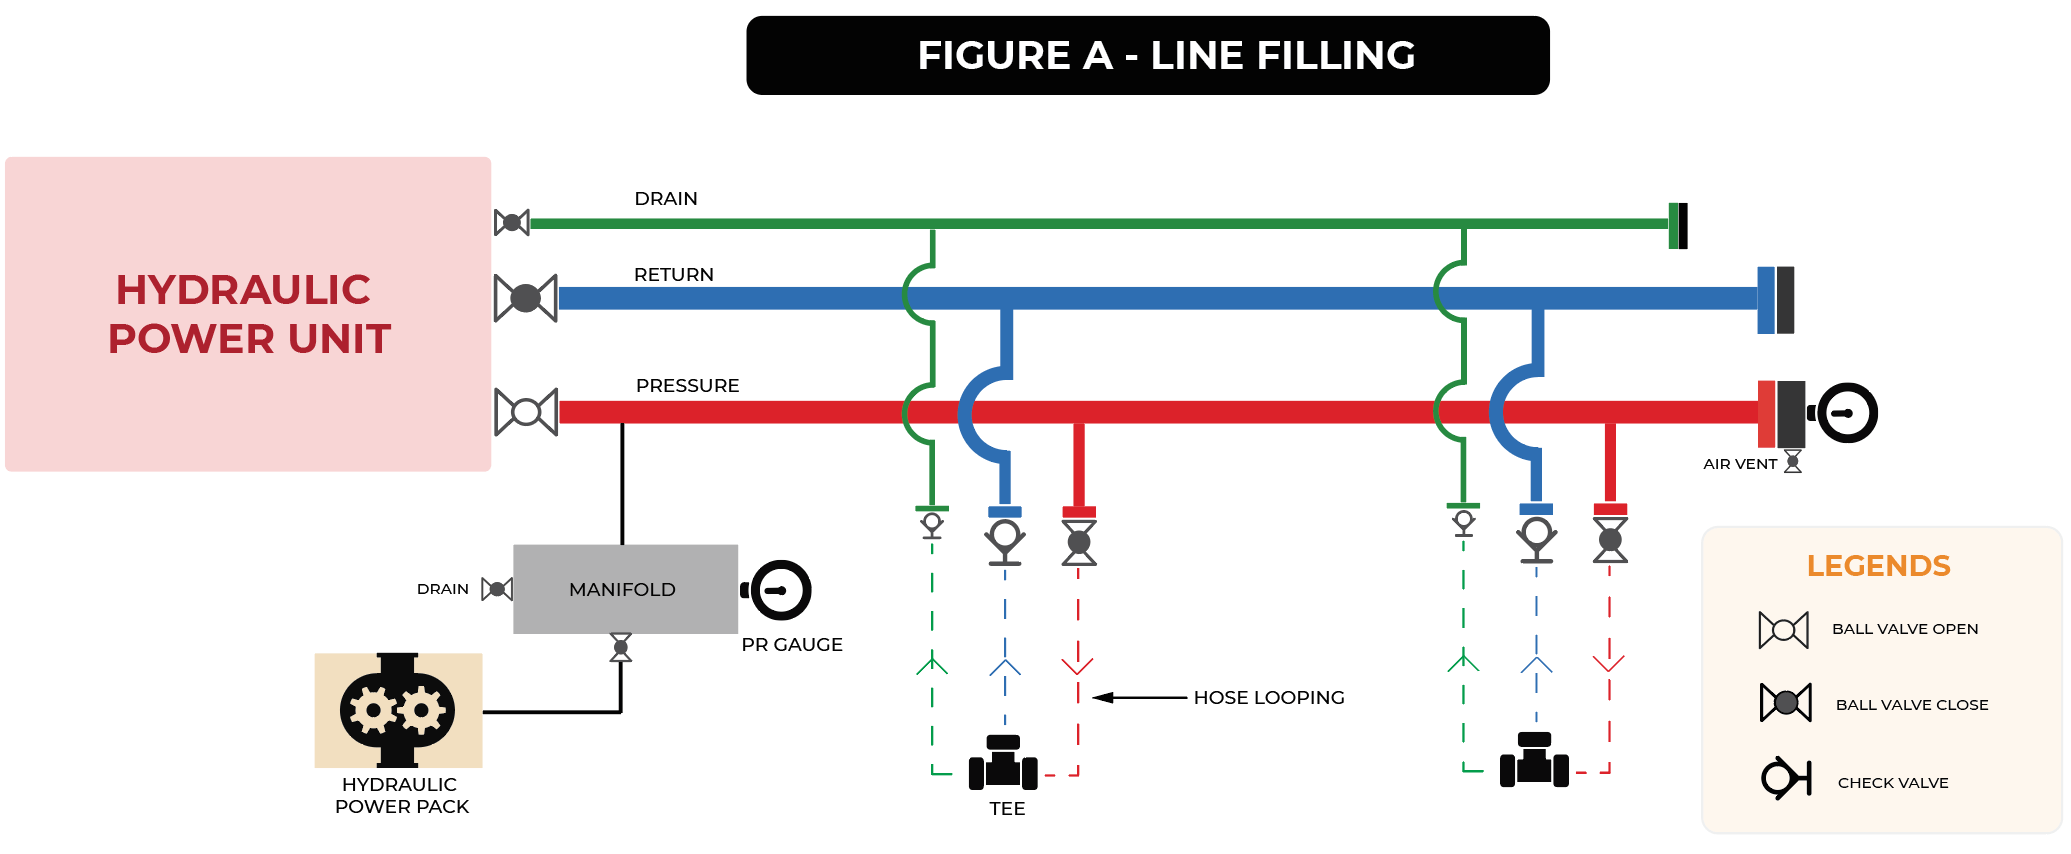 Hydraulic Line Filling